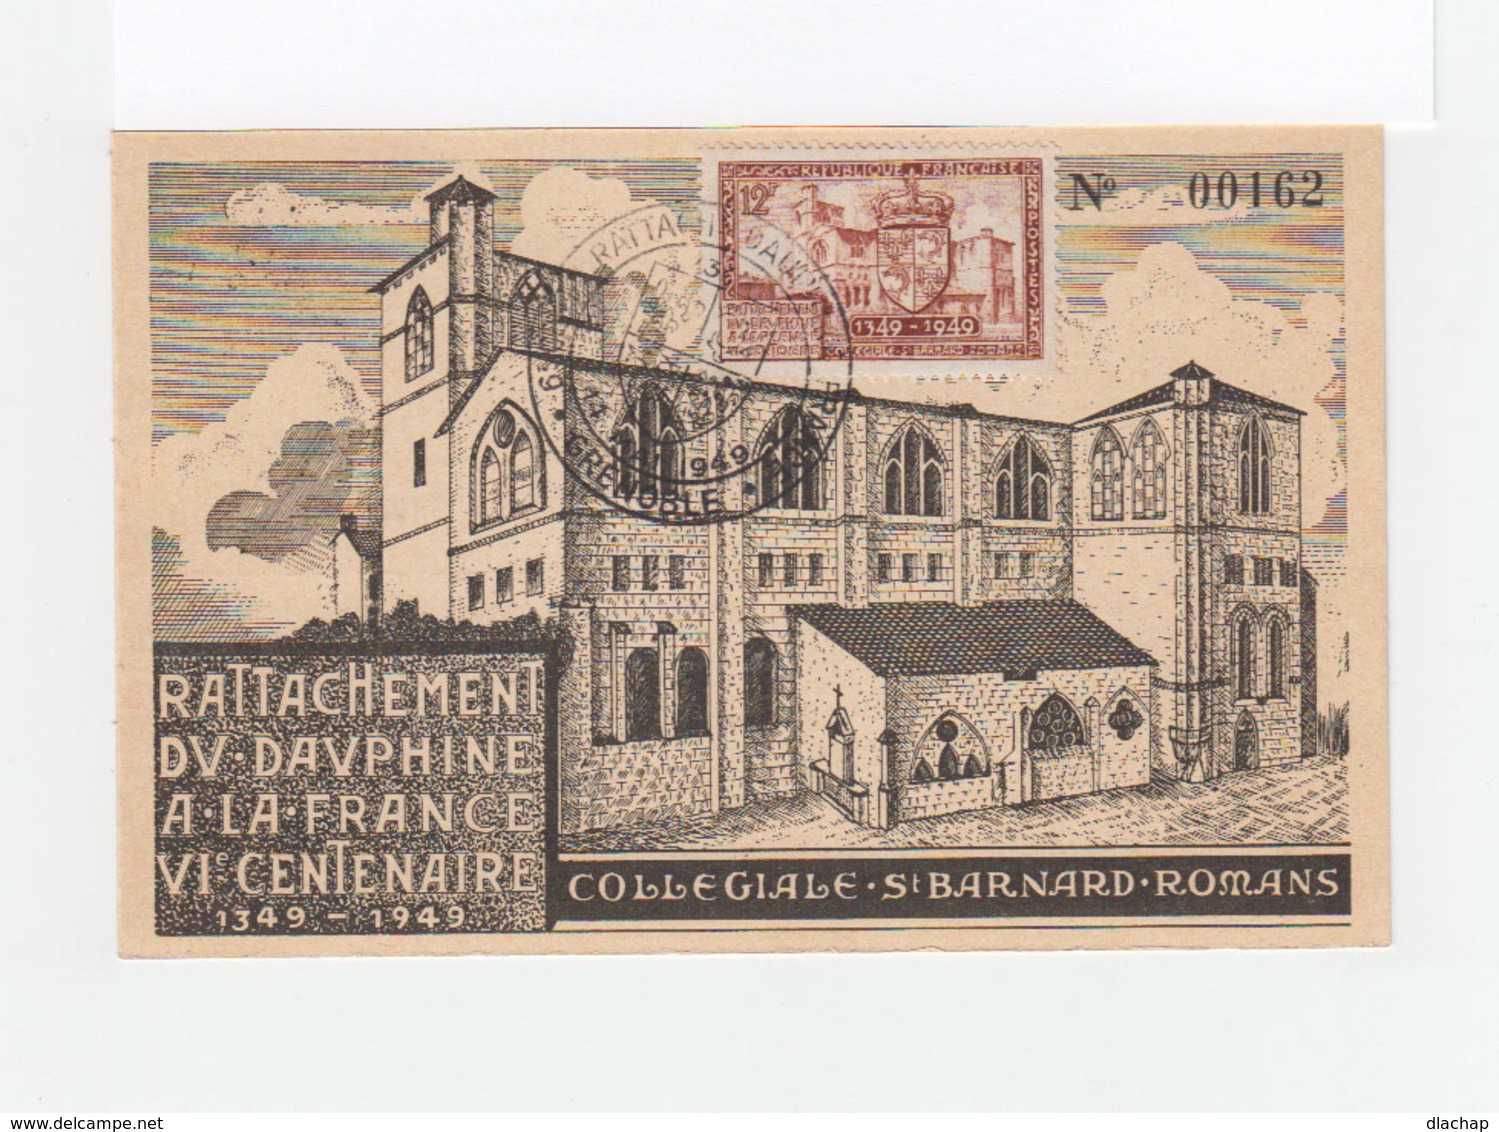 Carte Rattachement Du Dauphiné à La France VIe Centenaire. 1349 1949. Collégiale St Barnard Romans. (1076x) - ....-1949